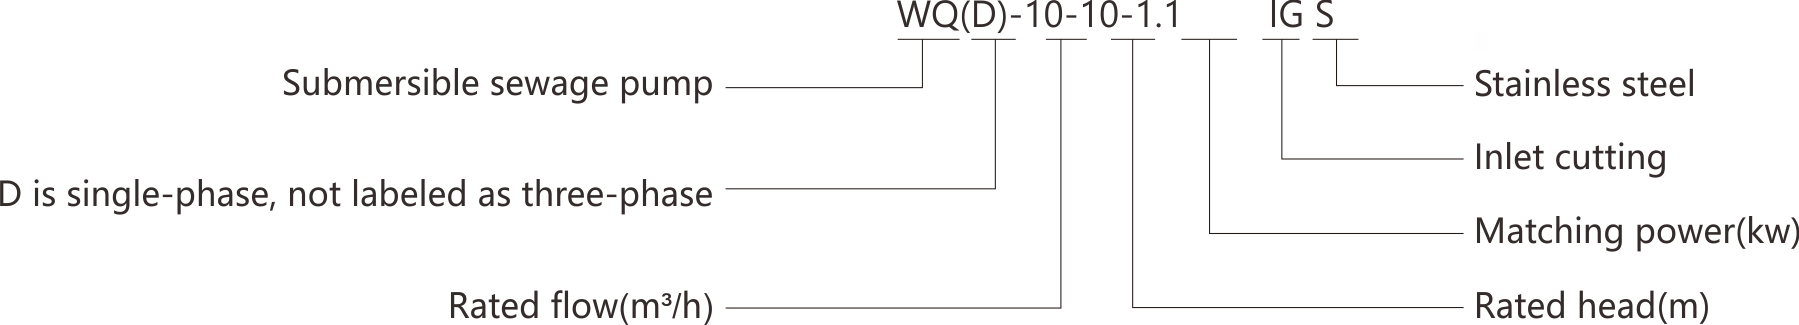 WQD-IGS